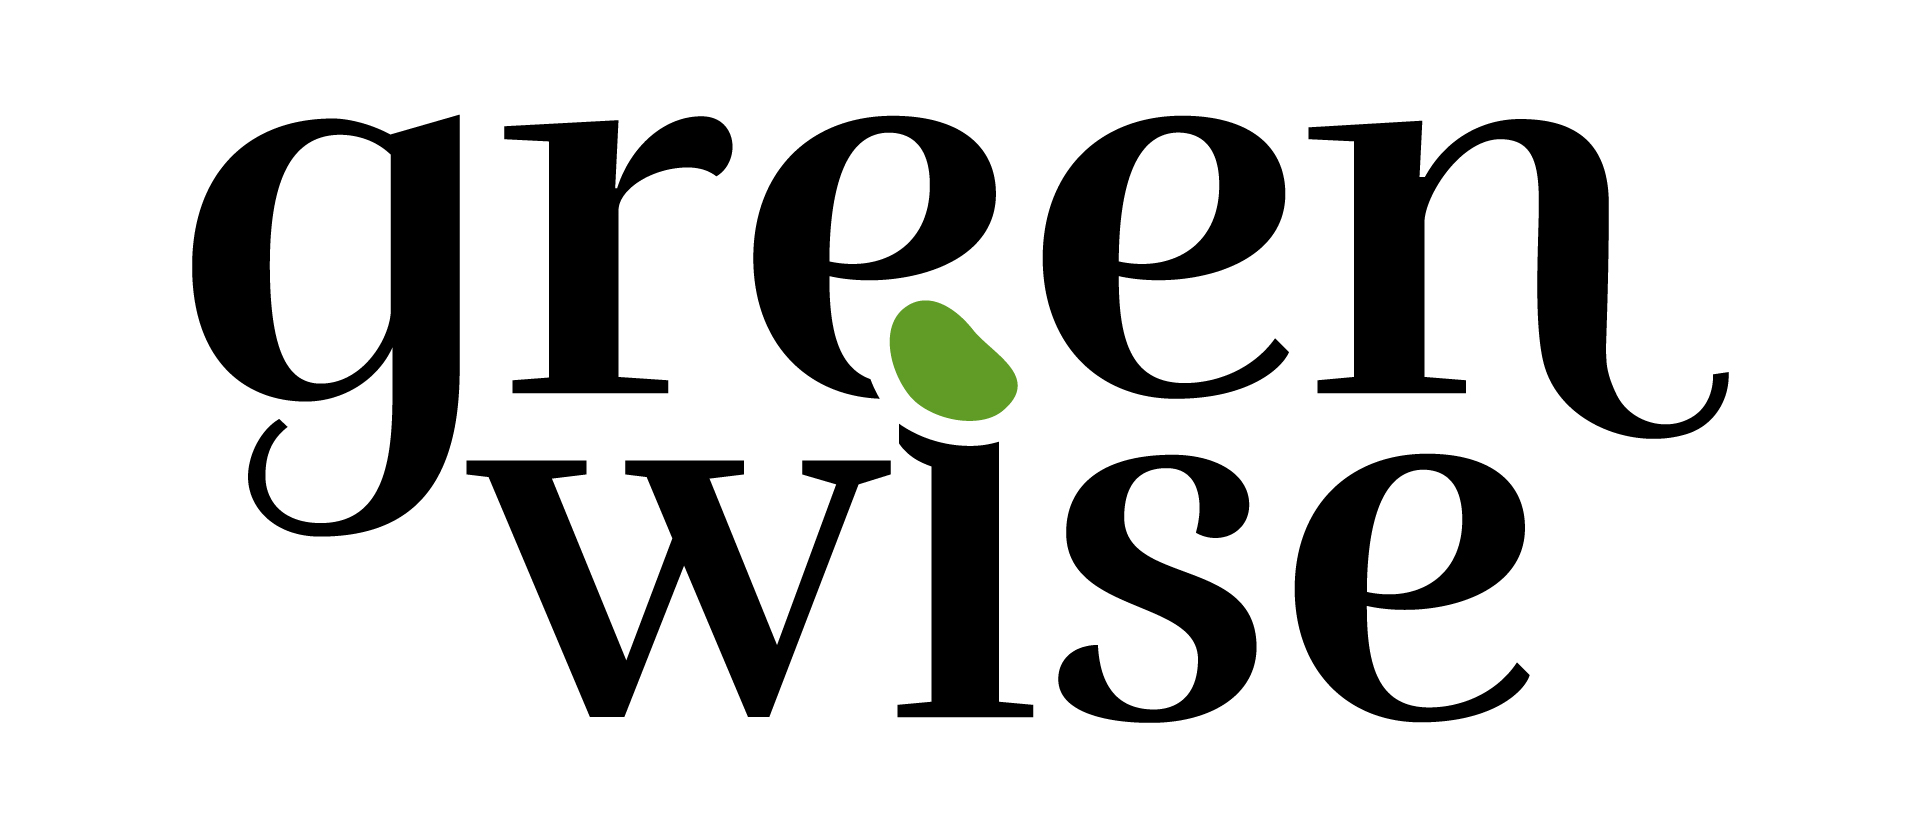 Greenwise logo